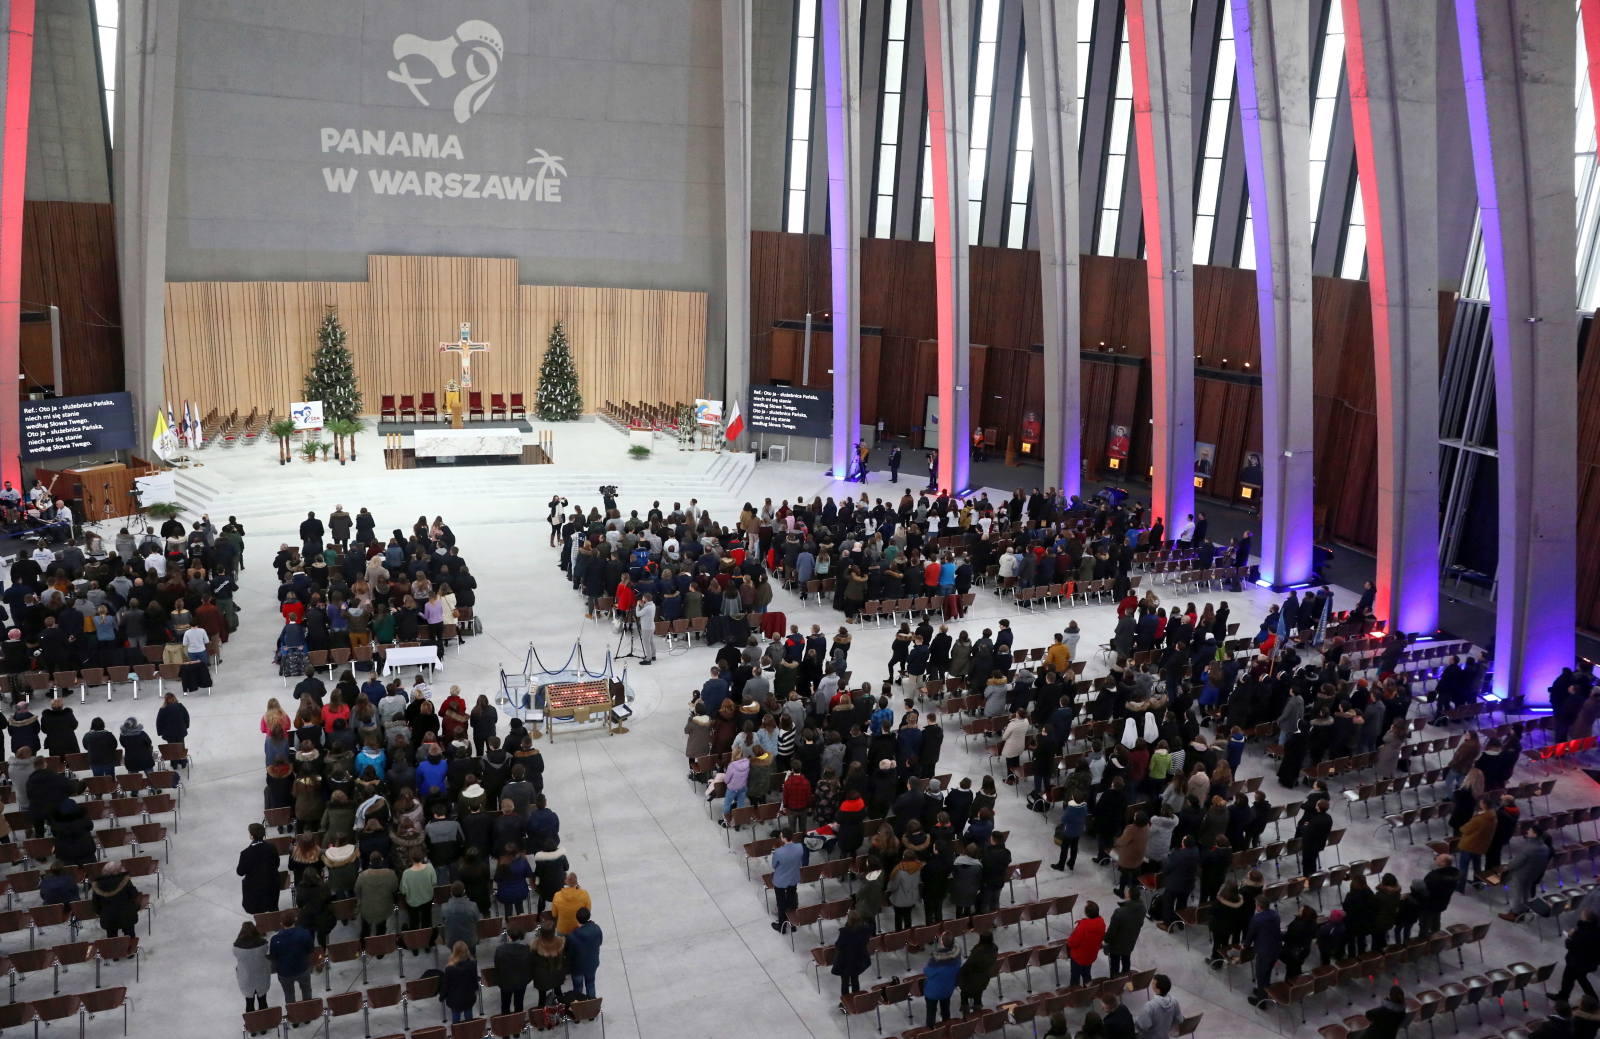 Abp Ryś rozmawiał z dziennikarzami w niedzielę w Świątyni Opatrzności Bożej w Warszawie podczas spotkania „Panama w Warszawie”, które odbyło się w łączności z 34. Światowymi Dniami Młodzieży w Panamie/
PAP/Tomasz Gzell